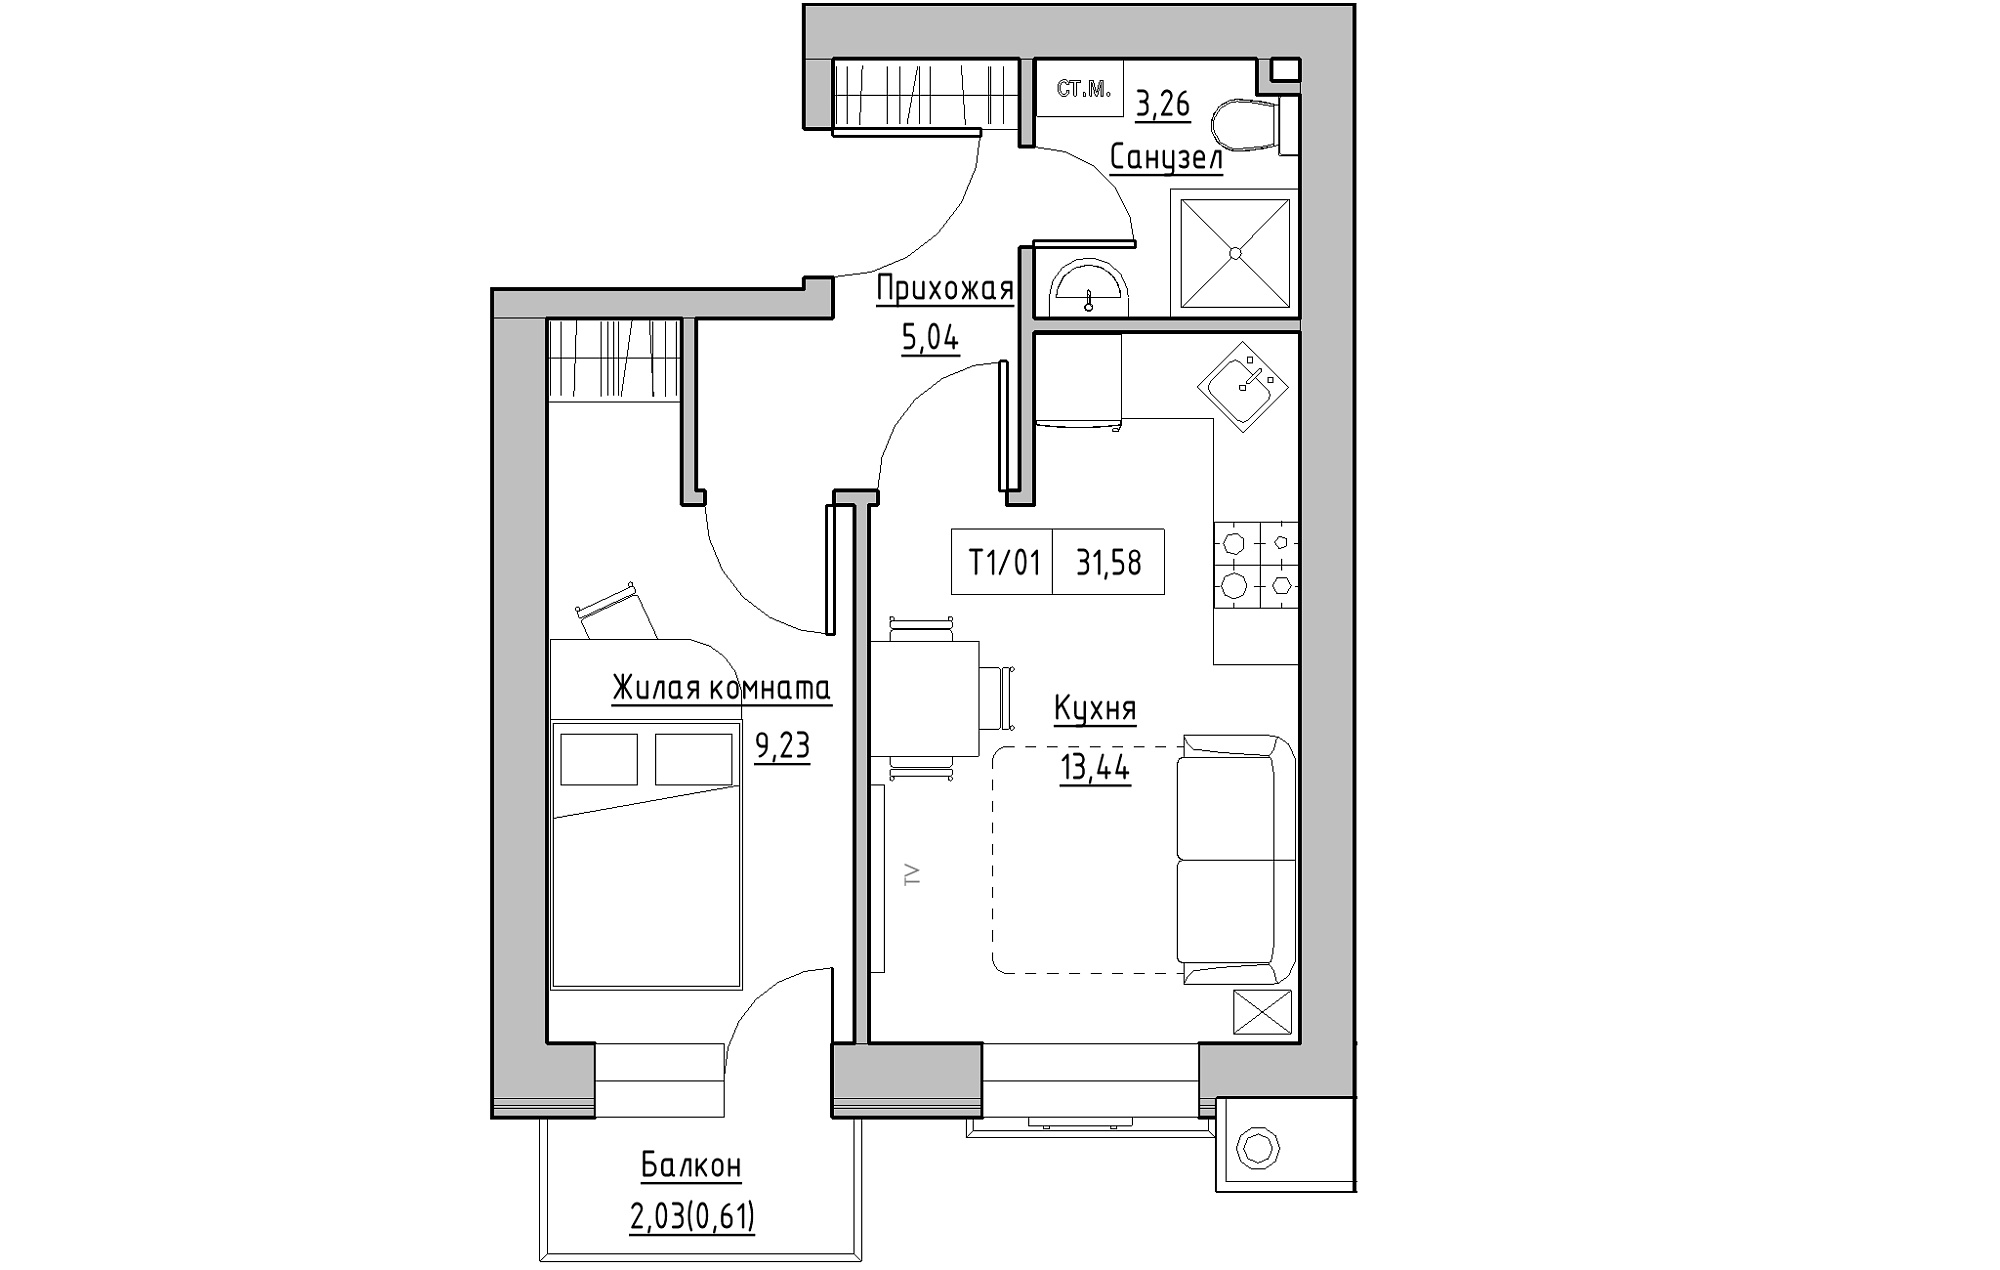 Планування 1-к квартира площею 31.58м2, KS-013-02/0011.